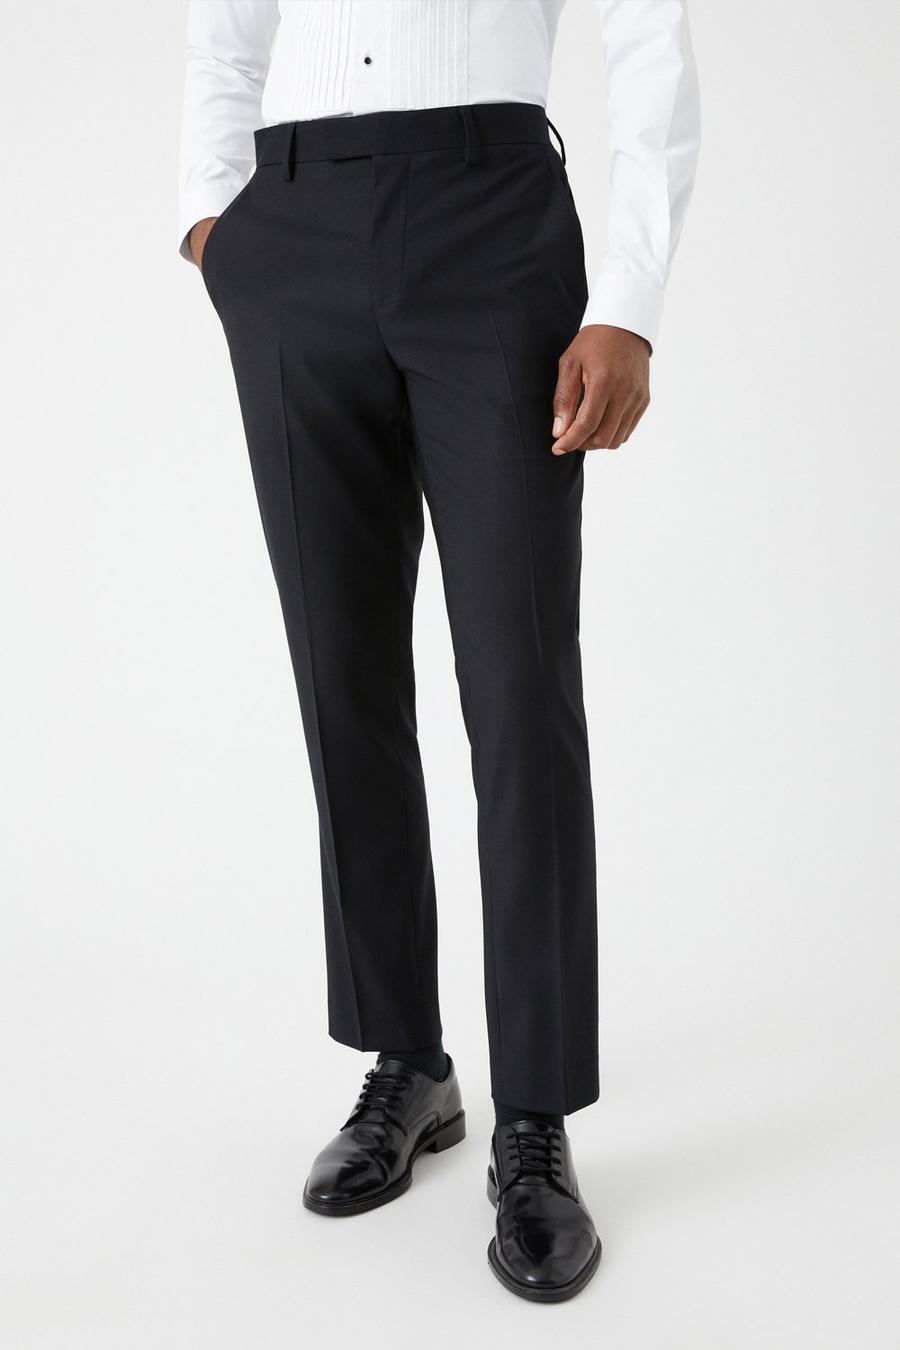 Slim Fit Black Tuxedo Three-Piece Suit